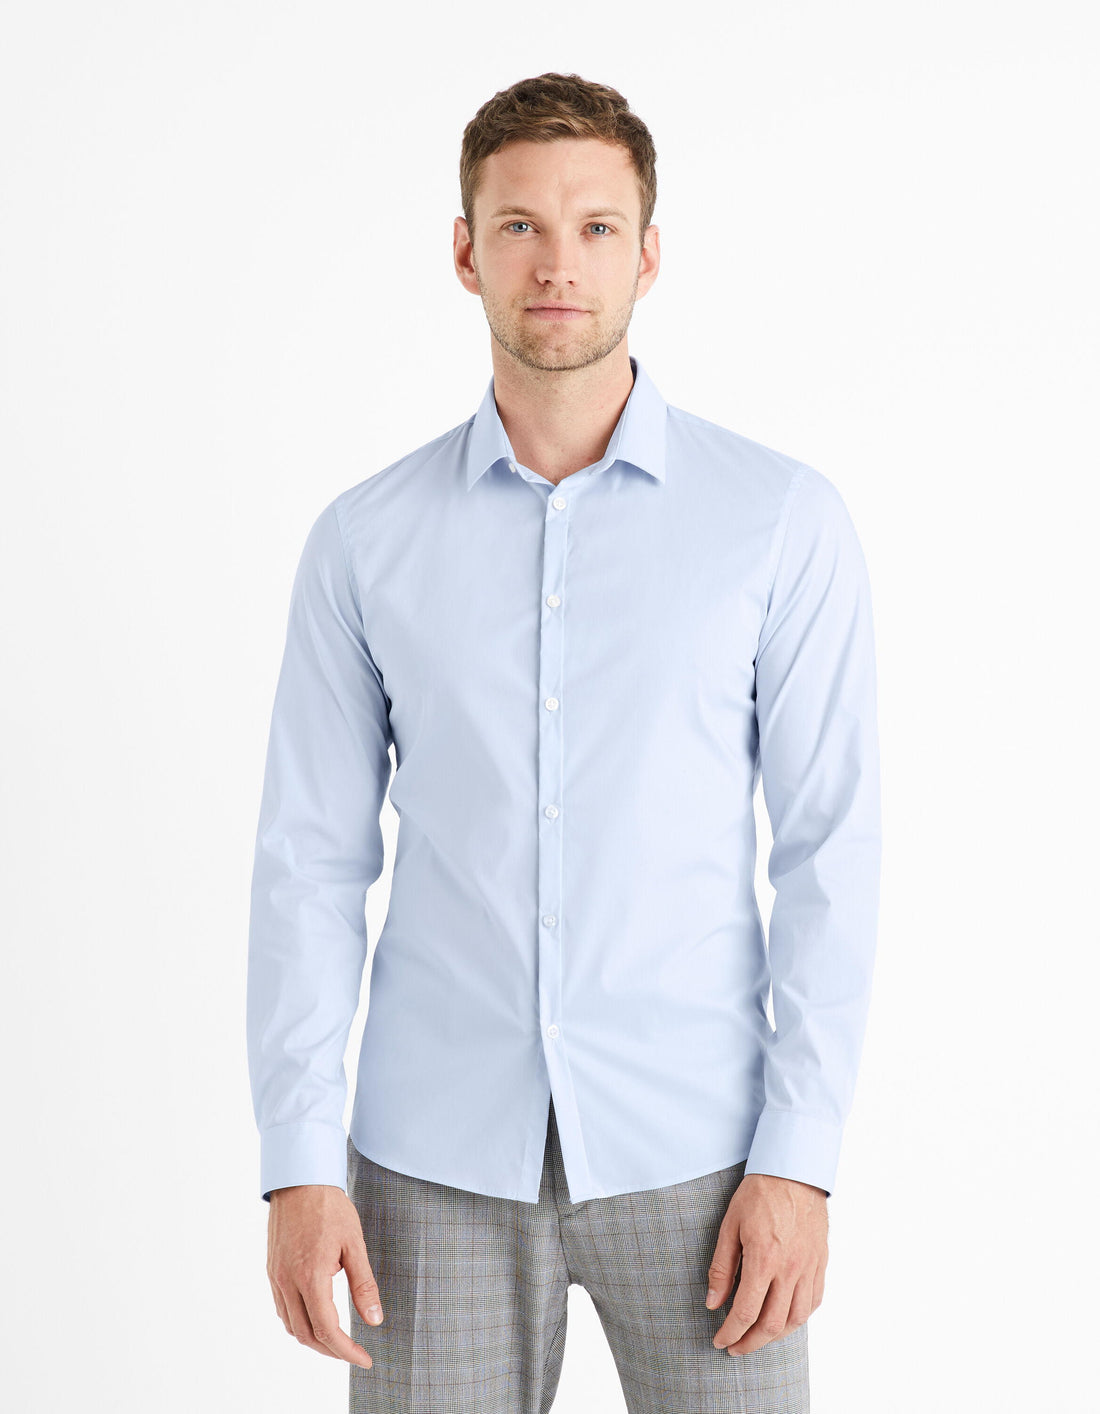 Extra Slim Stretch Cotton Shirt_VAXAVIER_LIGHT BLUE 01_01